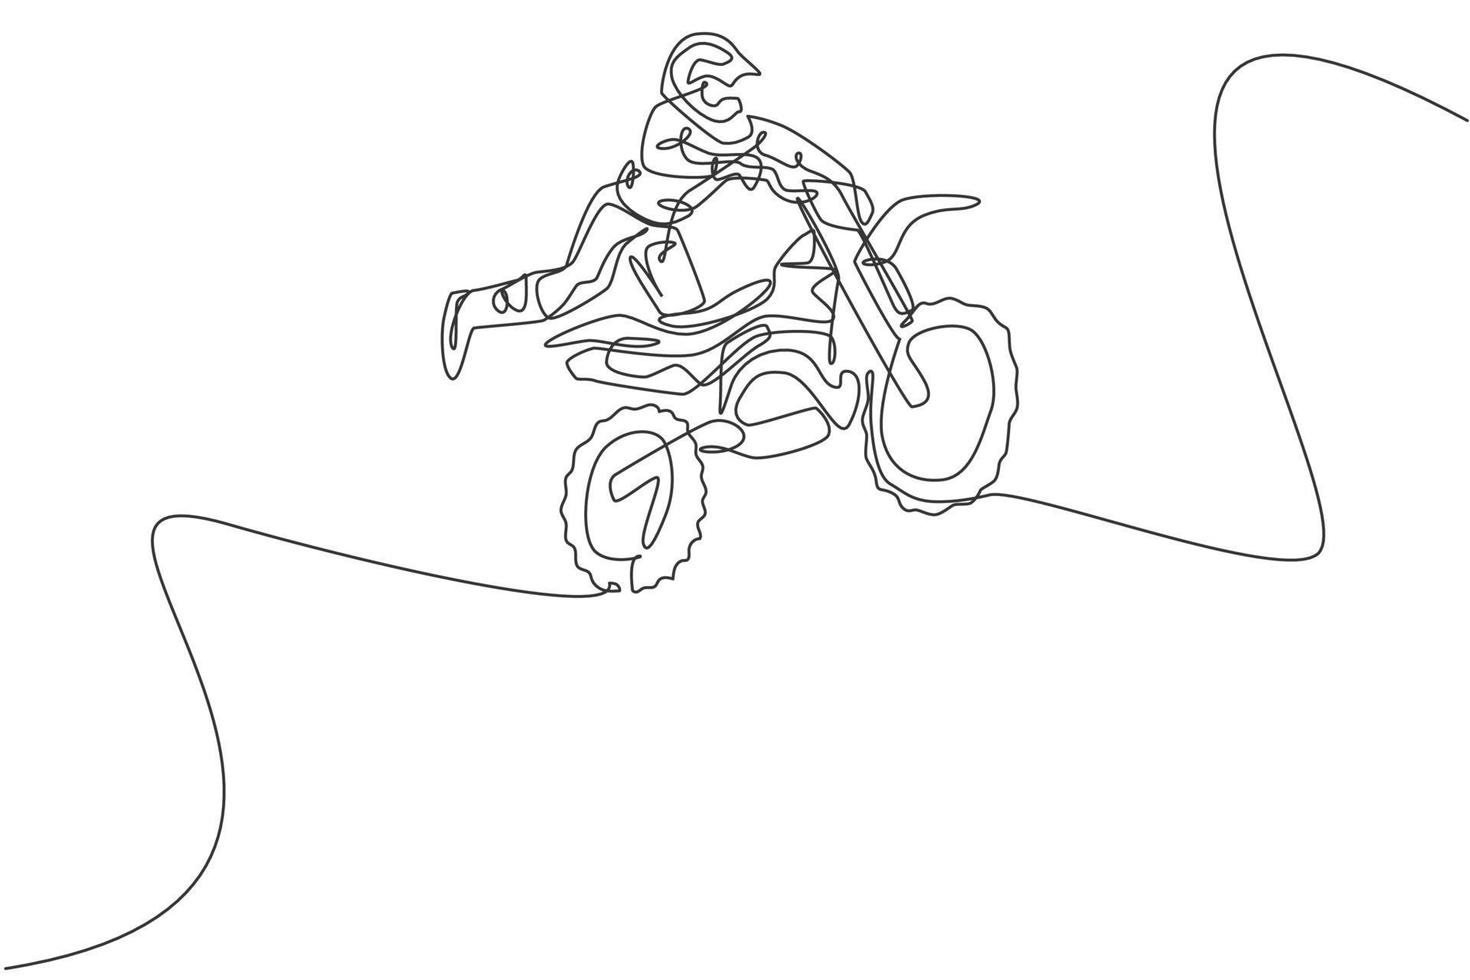 eine einzige Strichzeichnung eines jungen Motocross-Fahrers, der Freestyle auf der Rennstrecke fliegt, Vektorgrafik. Extremsportkonzept. modernes Design mit durchgehender Linie für Motocross-Rennevent-Banner vektor